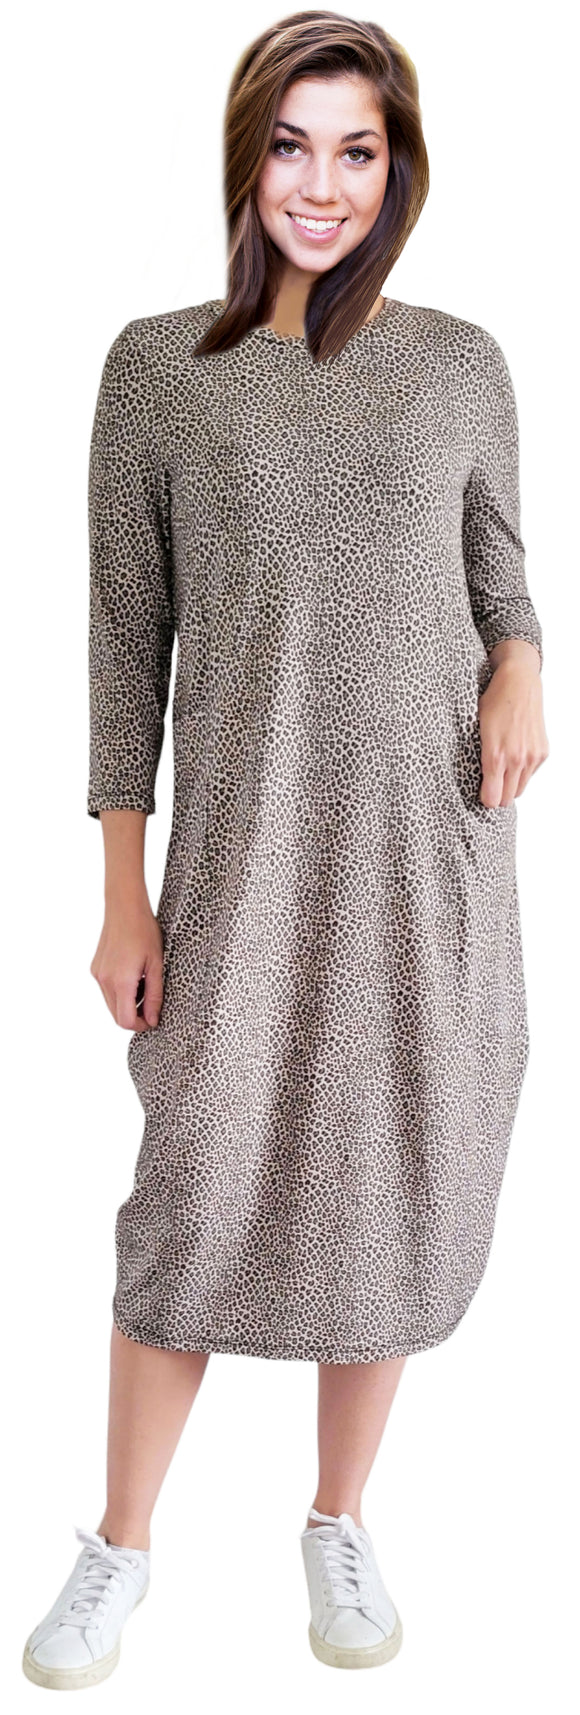 Leopard print Dress